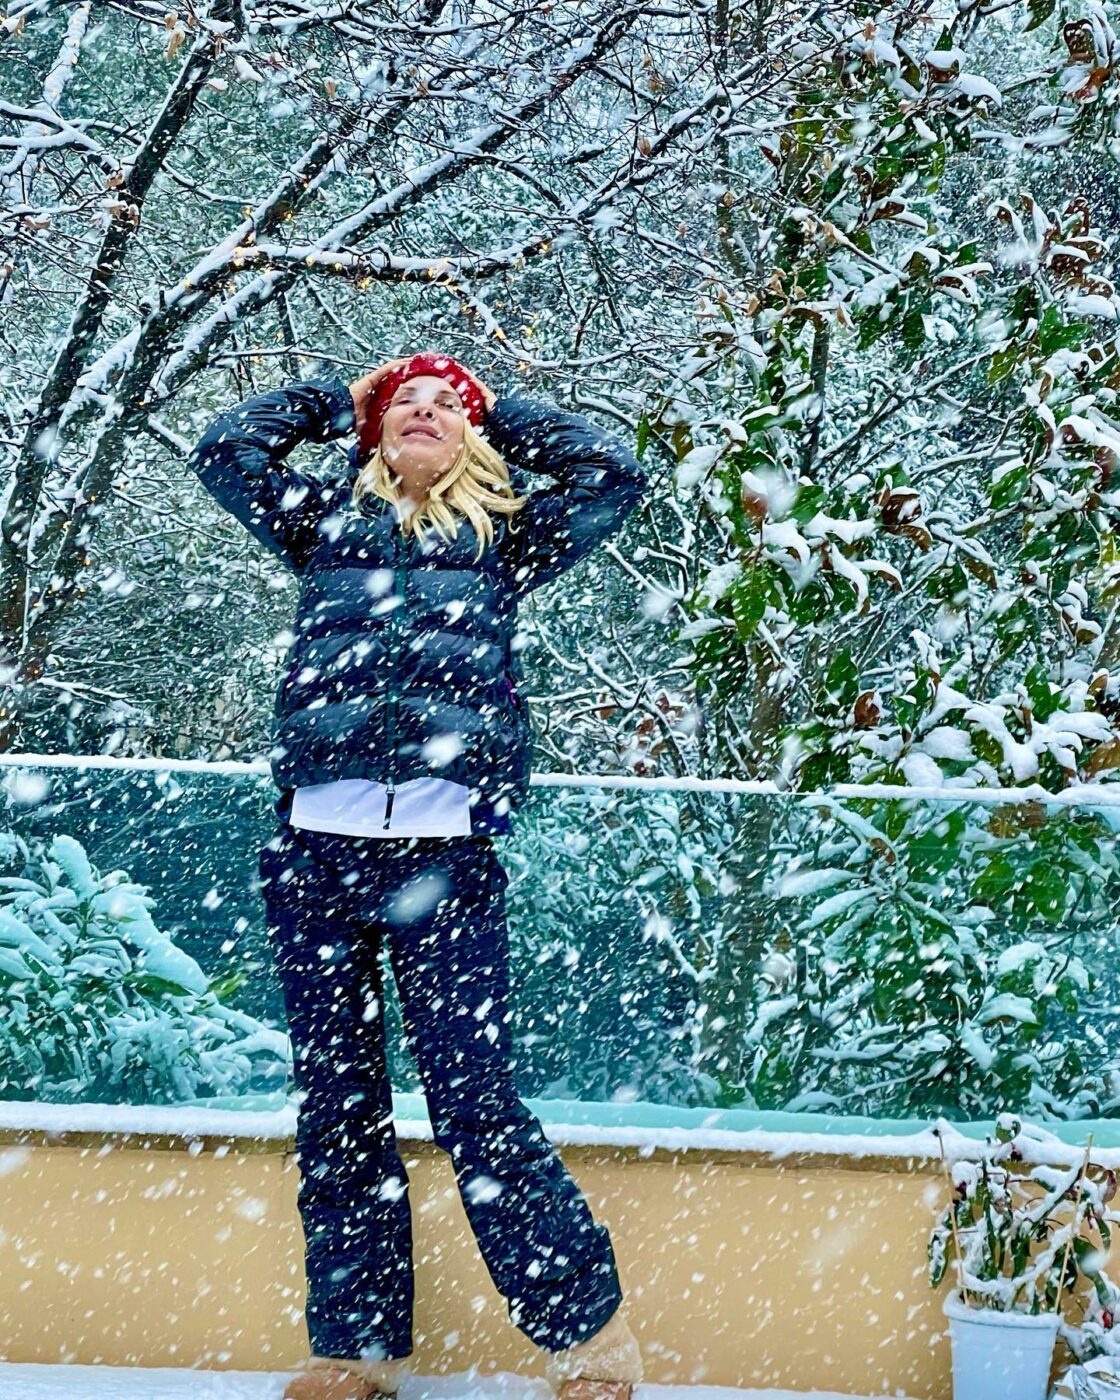 Η Ελένη Μενεγάκη στον χιονισμένο κήπο της: «Μόλις δω χιόνι στον κήπο κάνω σαν μικρό παιδί» (ΕΙΚΟΝΕΣ)